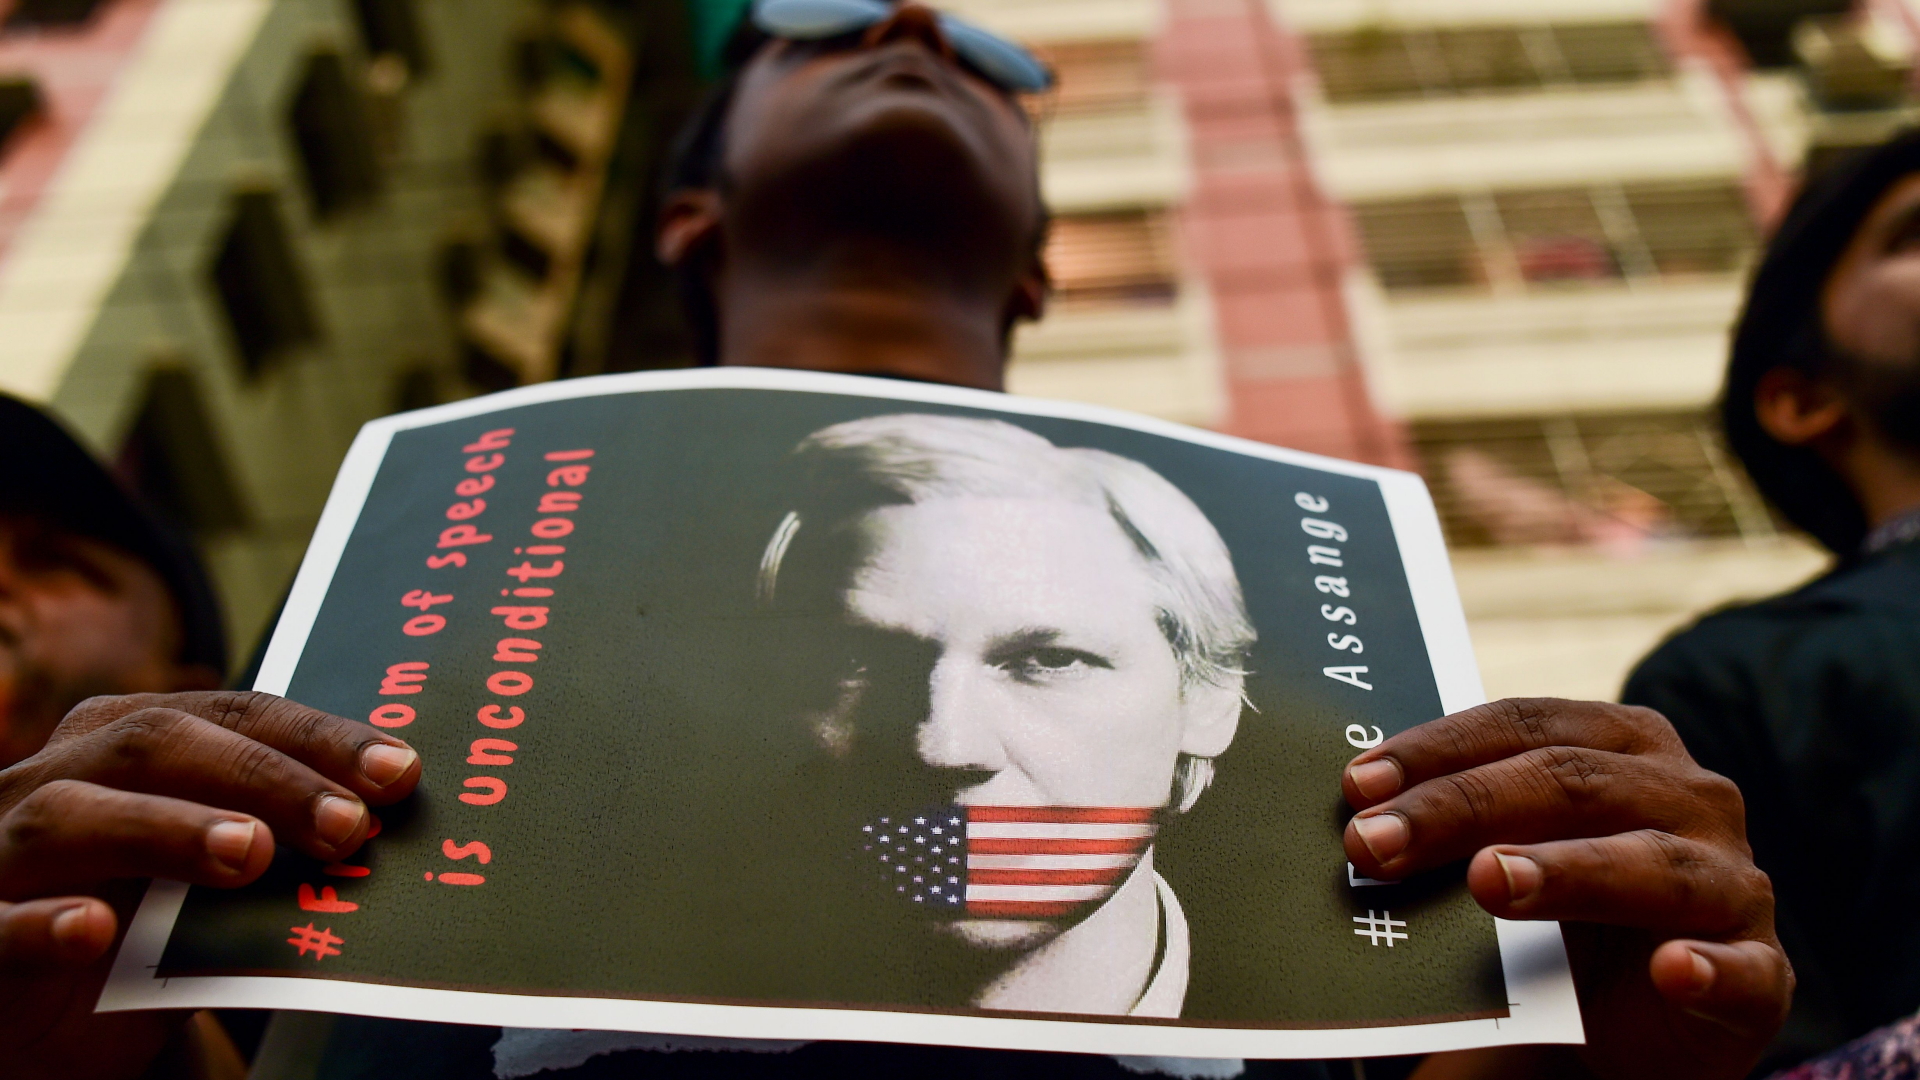 Demonstranten fordern die Freilassung von Assange. | Bildquelle: AFP